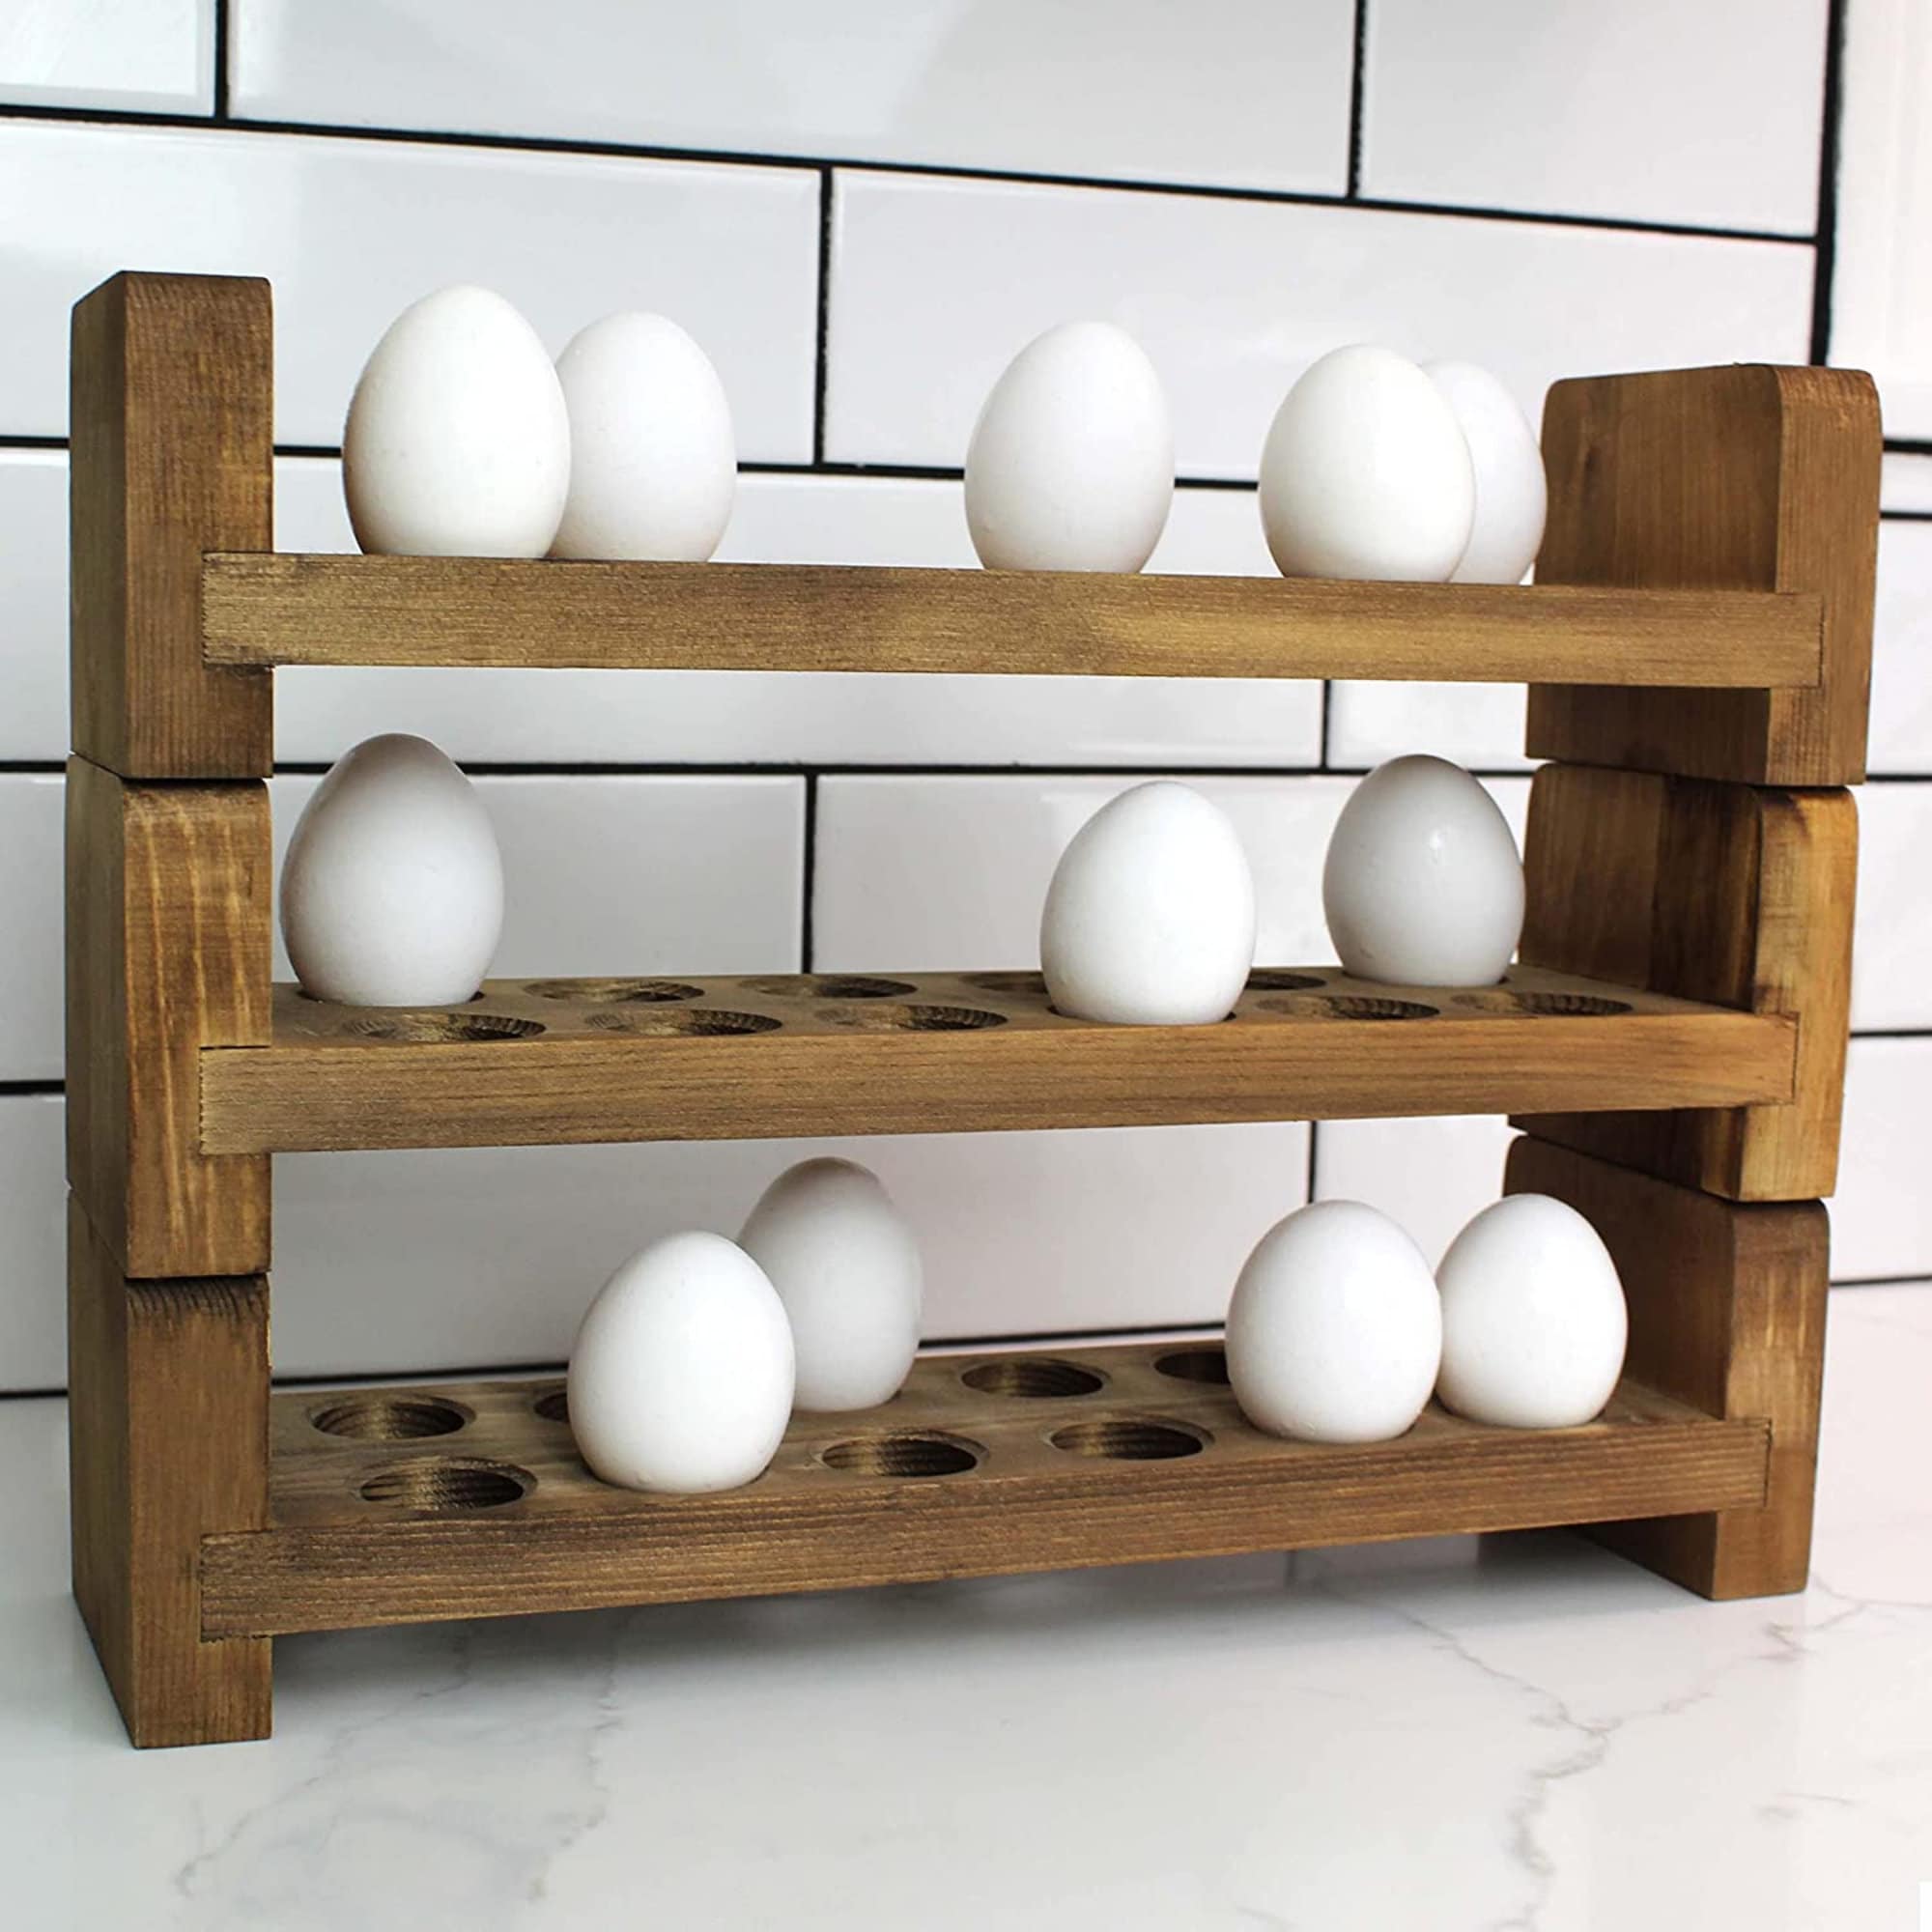 Countertop Egg Holder, Egg Holder, Egg Rack, Original Wood Egg Holder,  Custom Egg Holder, Egg Storage, Egg Display, Kitchen Rack, Wooden Egg 